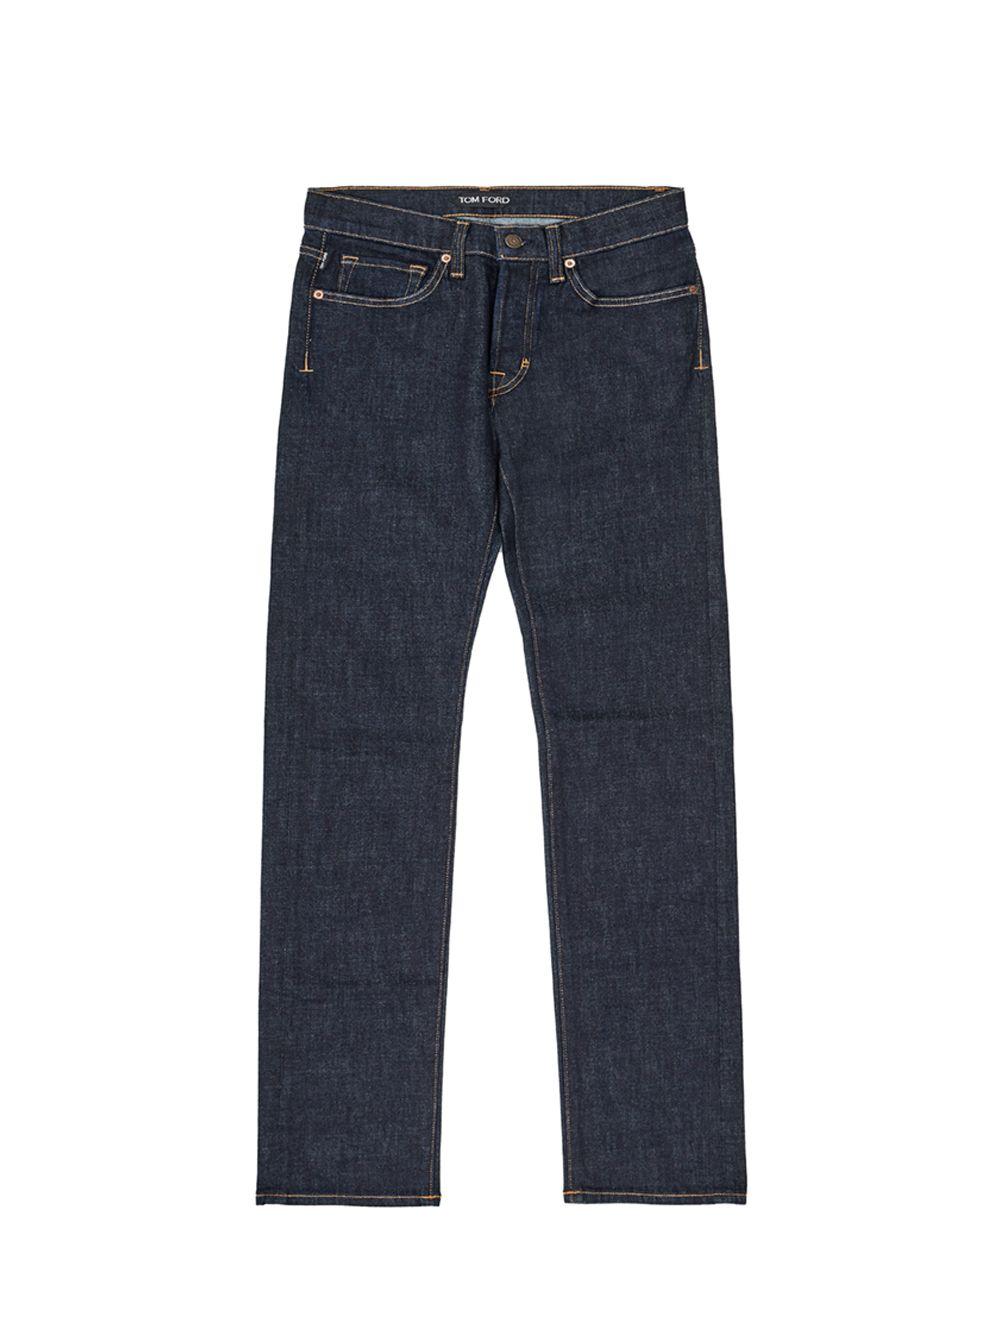 Tom Ford Blue Five Pockets Jeans Pants - Ellie Belle